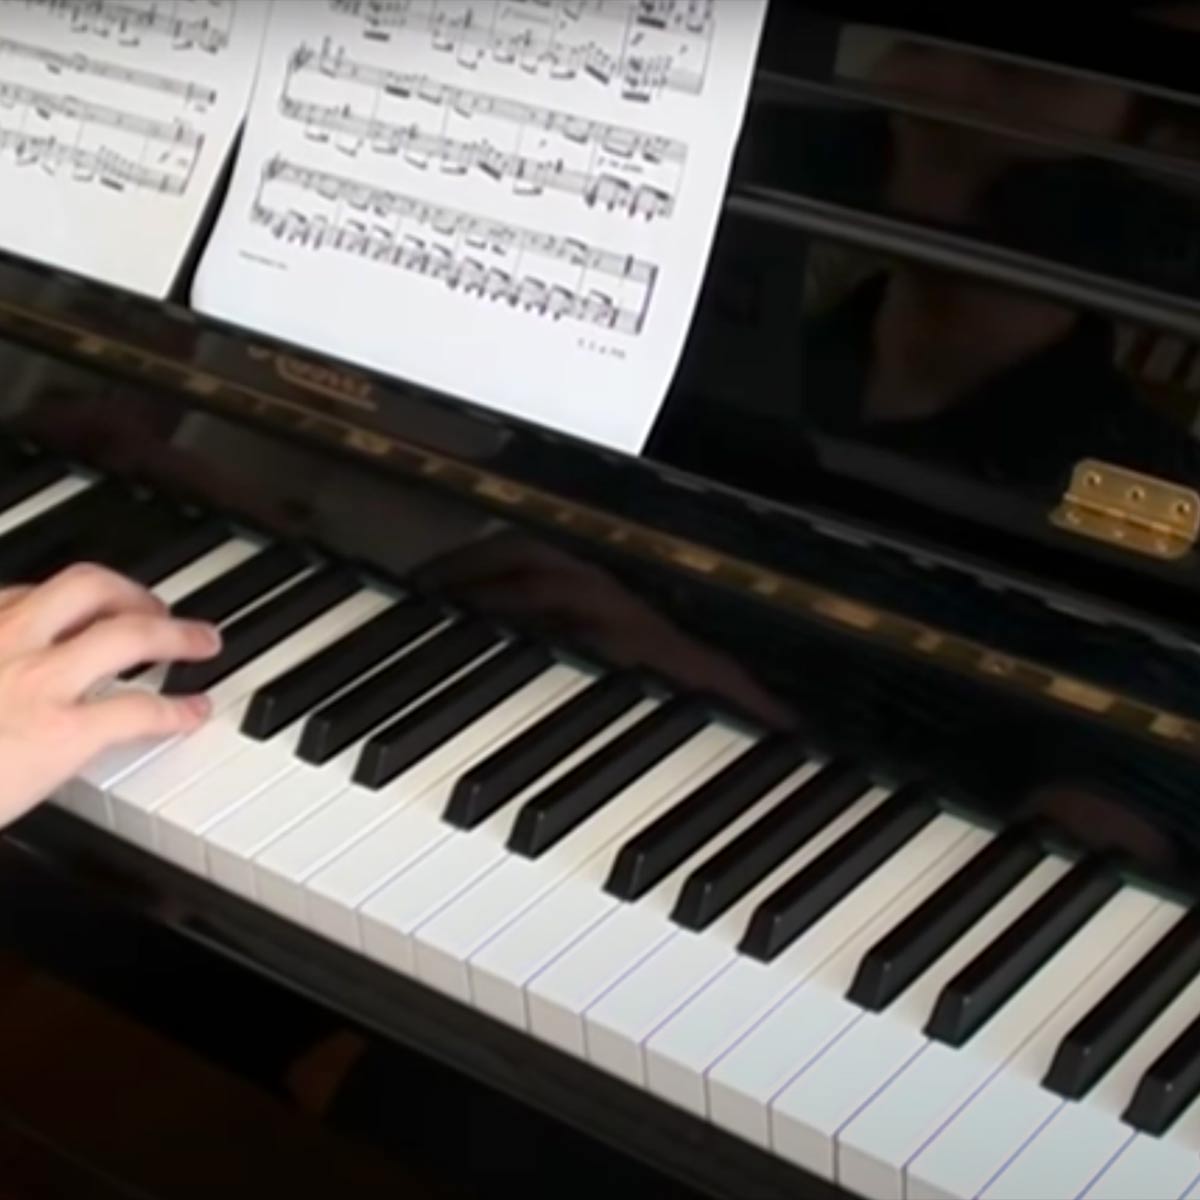 Play The Flea Waltz Piano Music Sheet On Virtual Piano - roblox royale high piano sheet